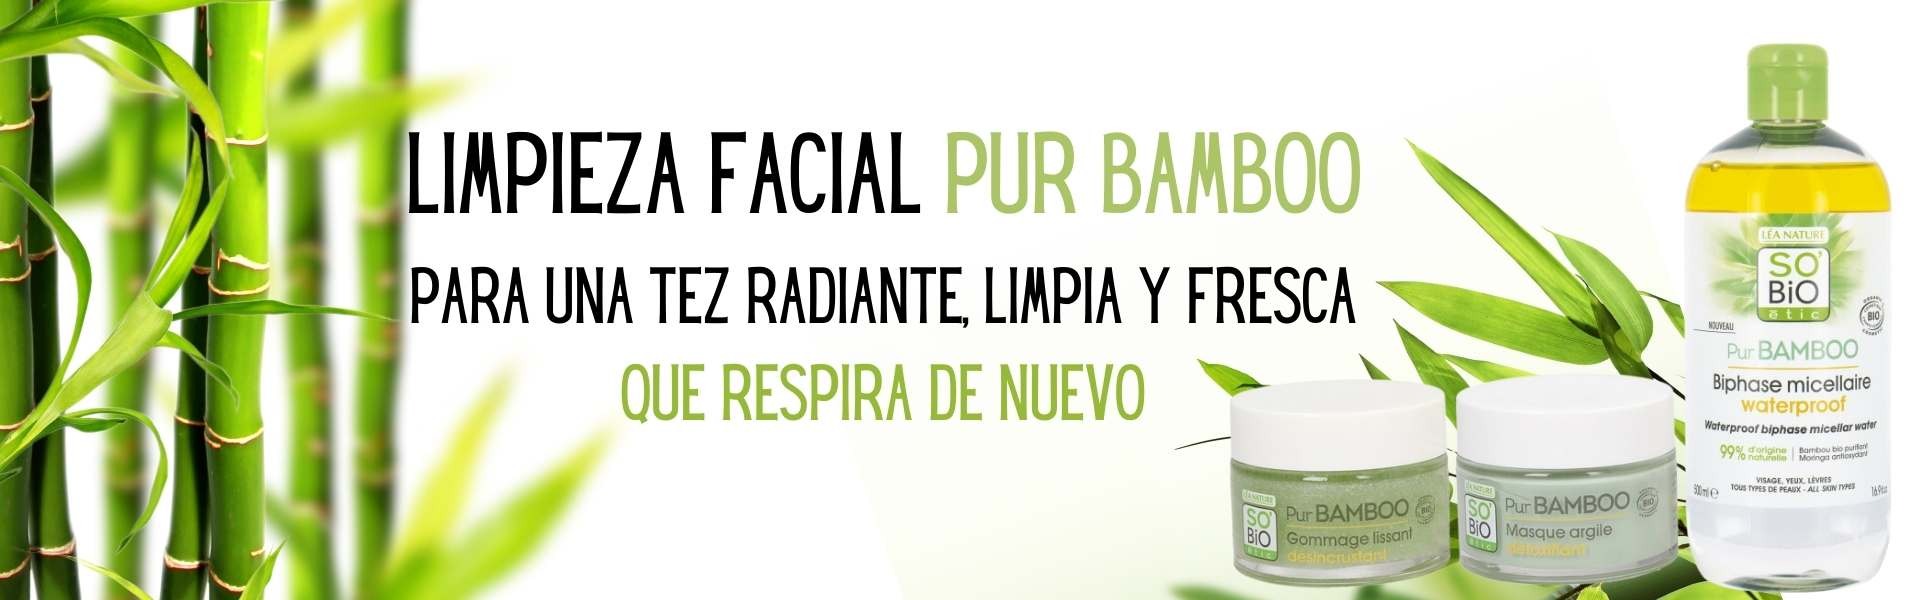 Limpieza facial Pur BAMBOO: piel libre de impurezas